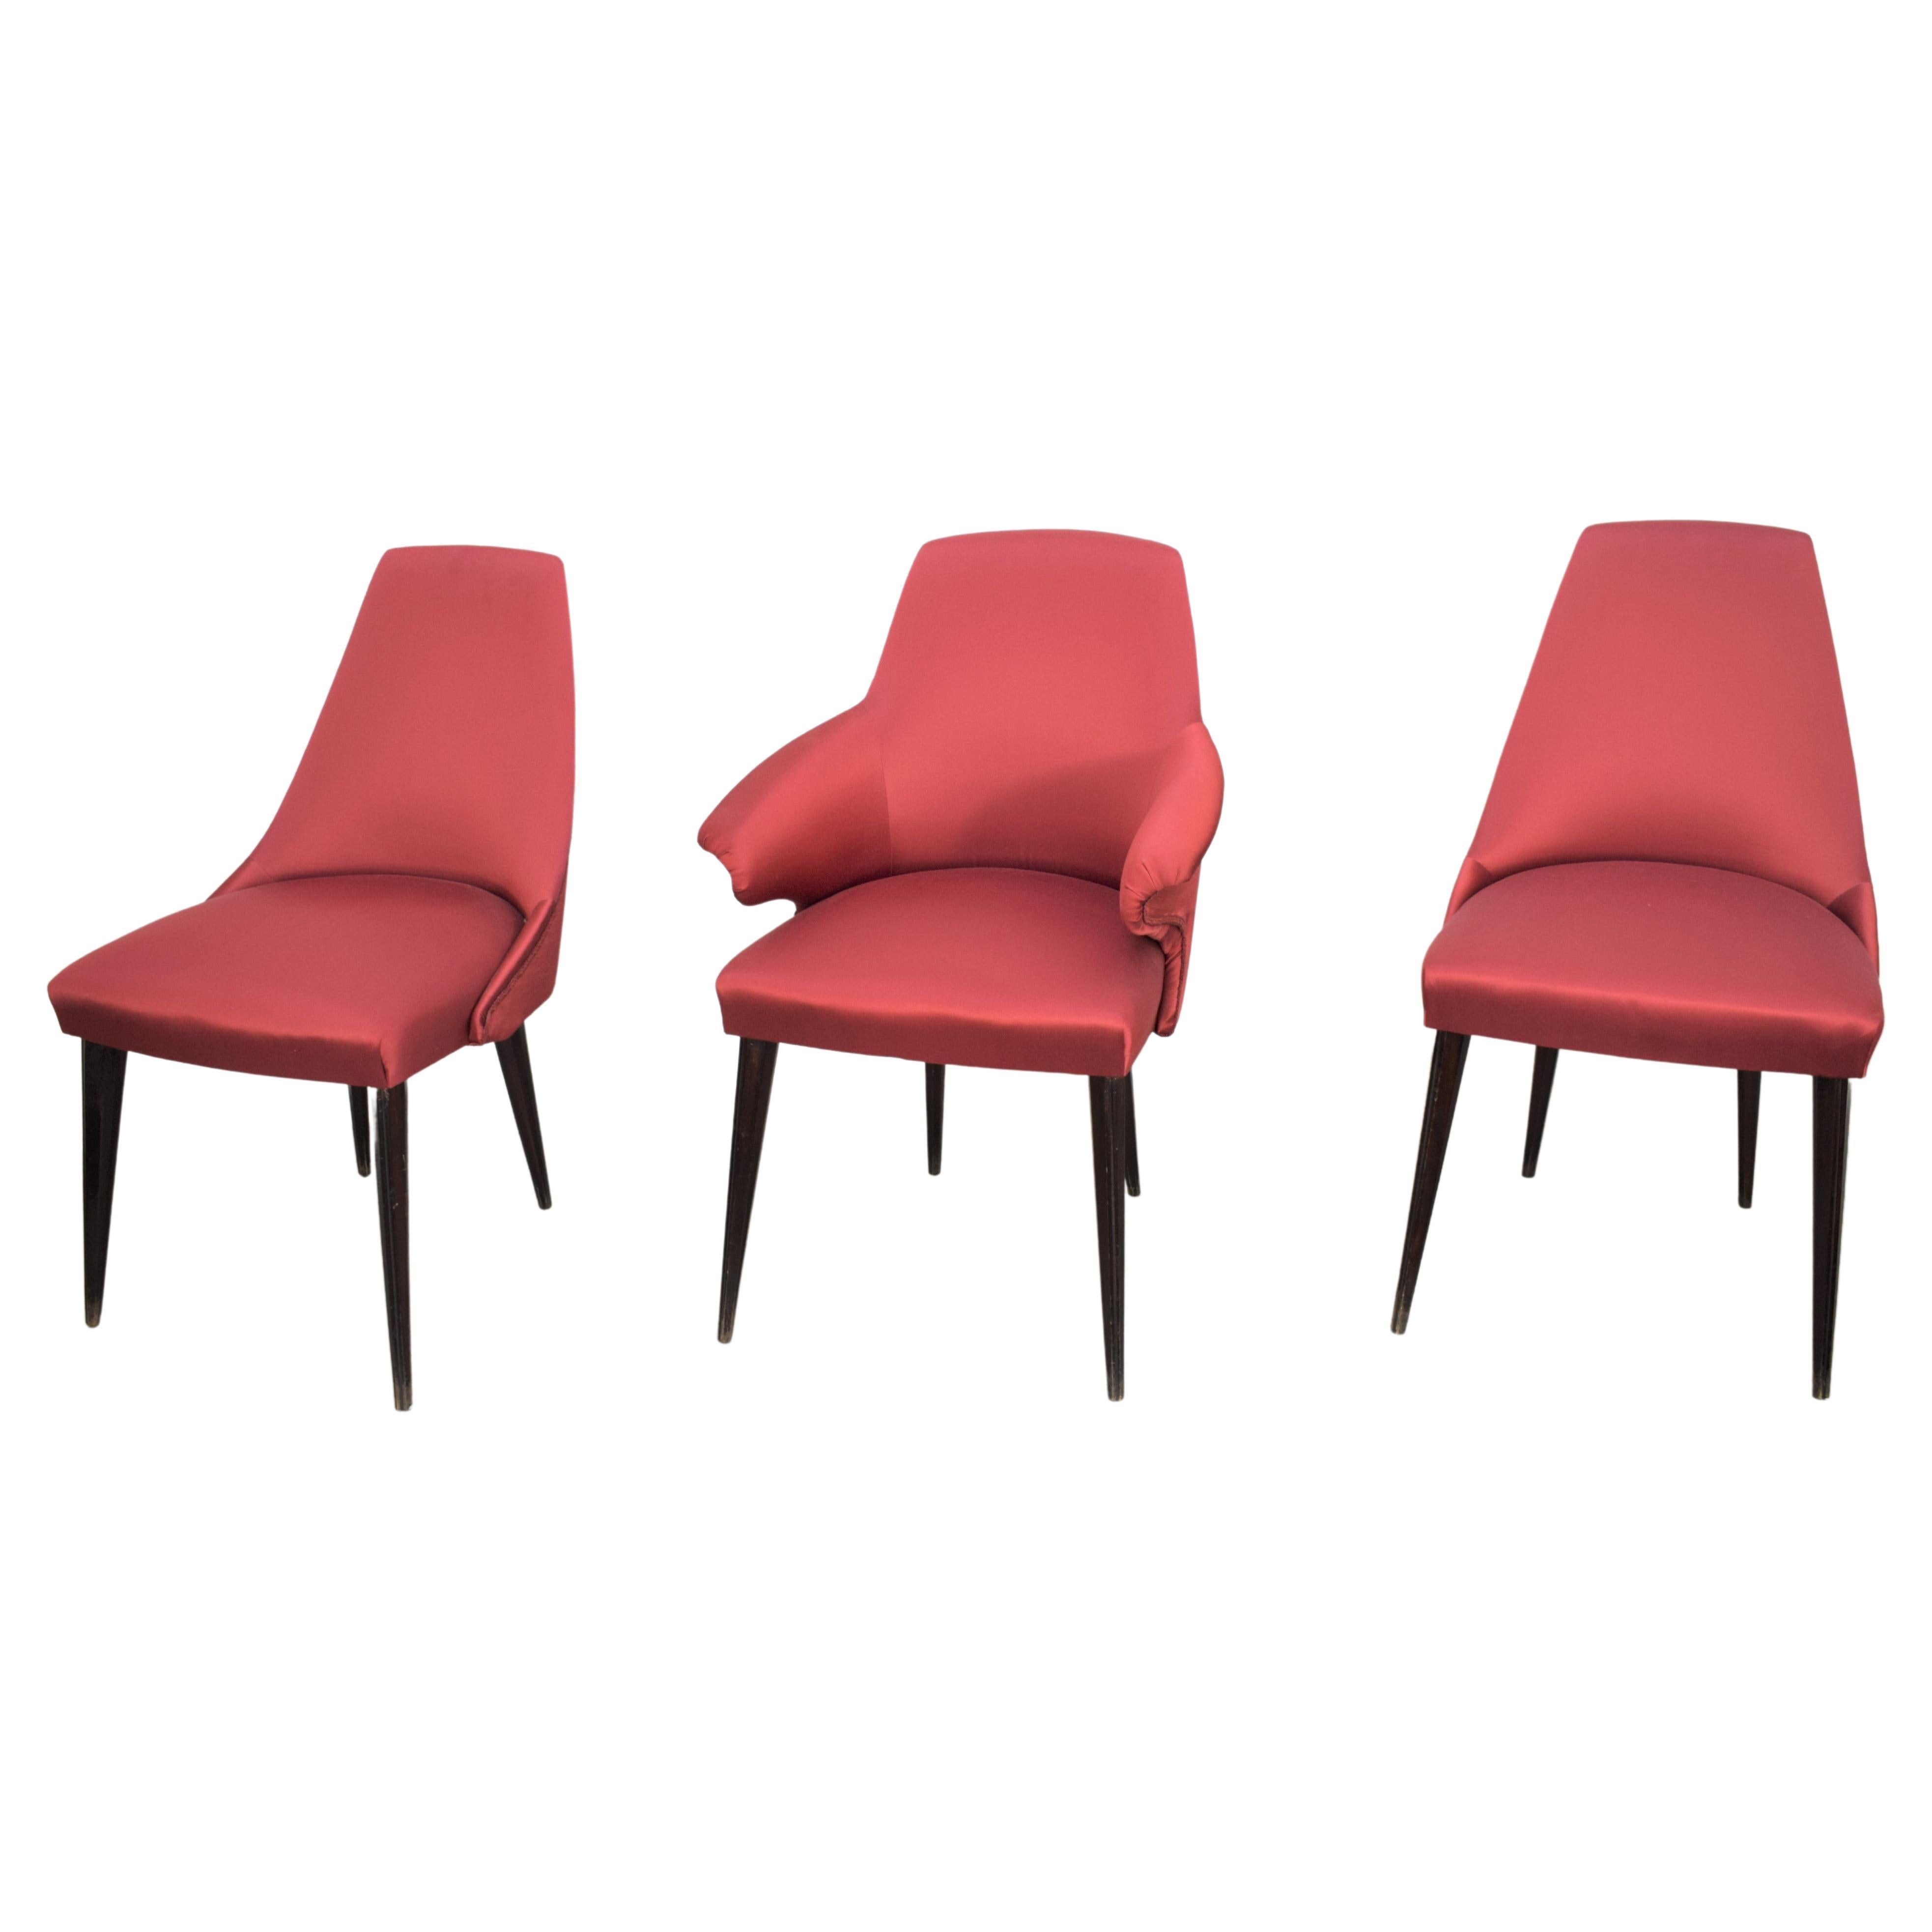 Set of 3 Italian Chairs, Osvaldo Borsani Style, 1960s For Sale